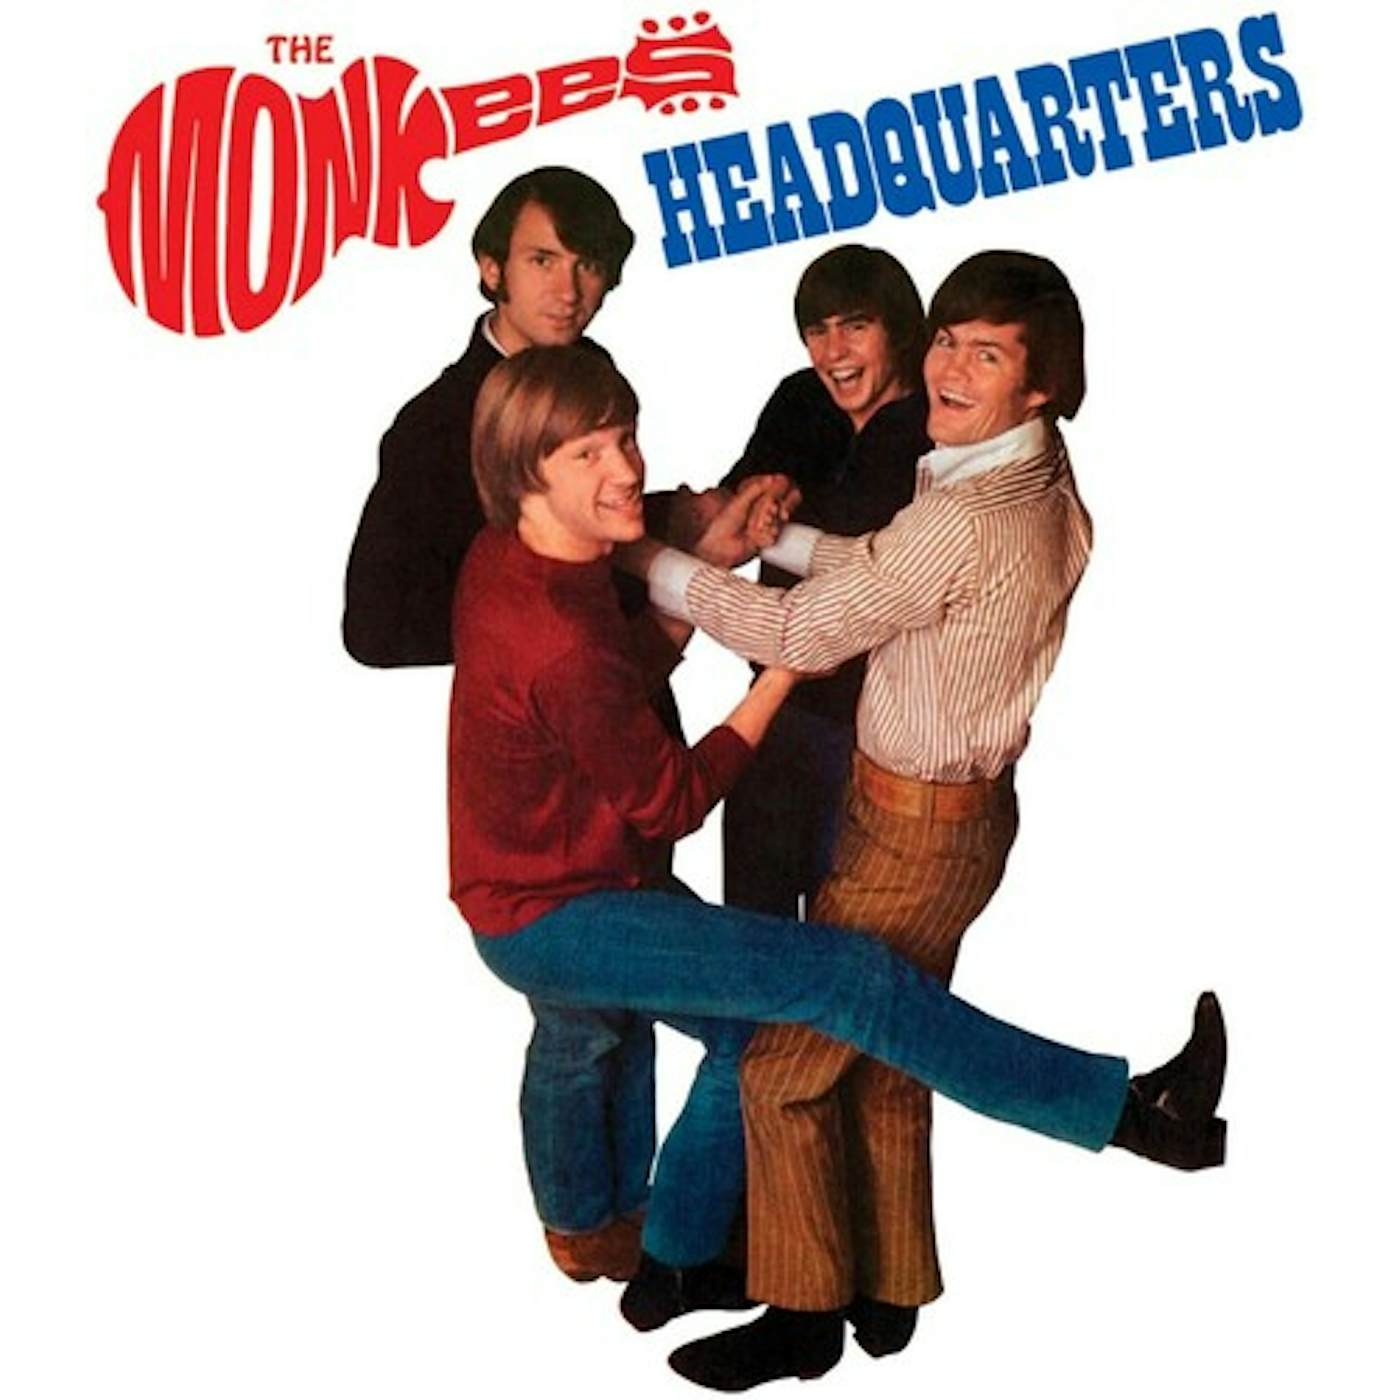 The Monkees Headquarters Vinyl Record